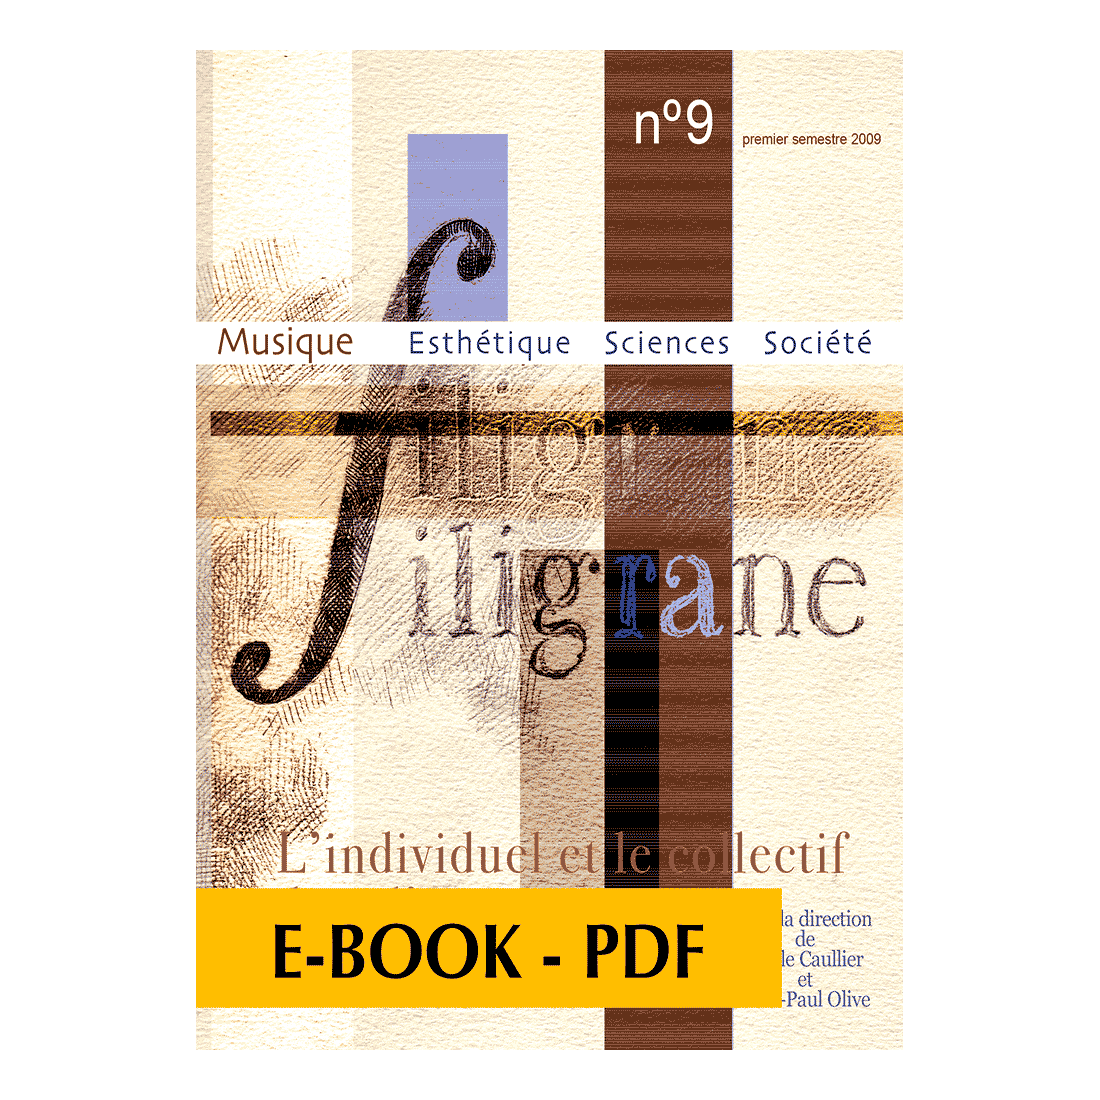 Revue Filigrane n°9 - L'individuel et le collectif dans l'art - E-book PDF